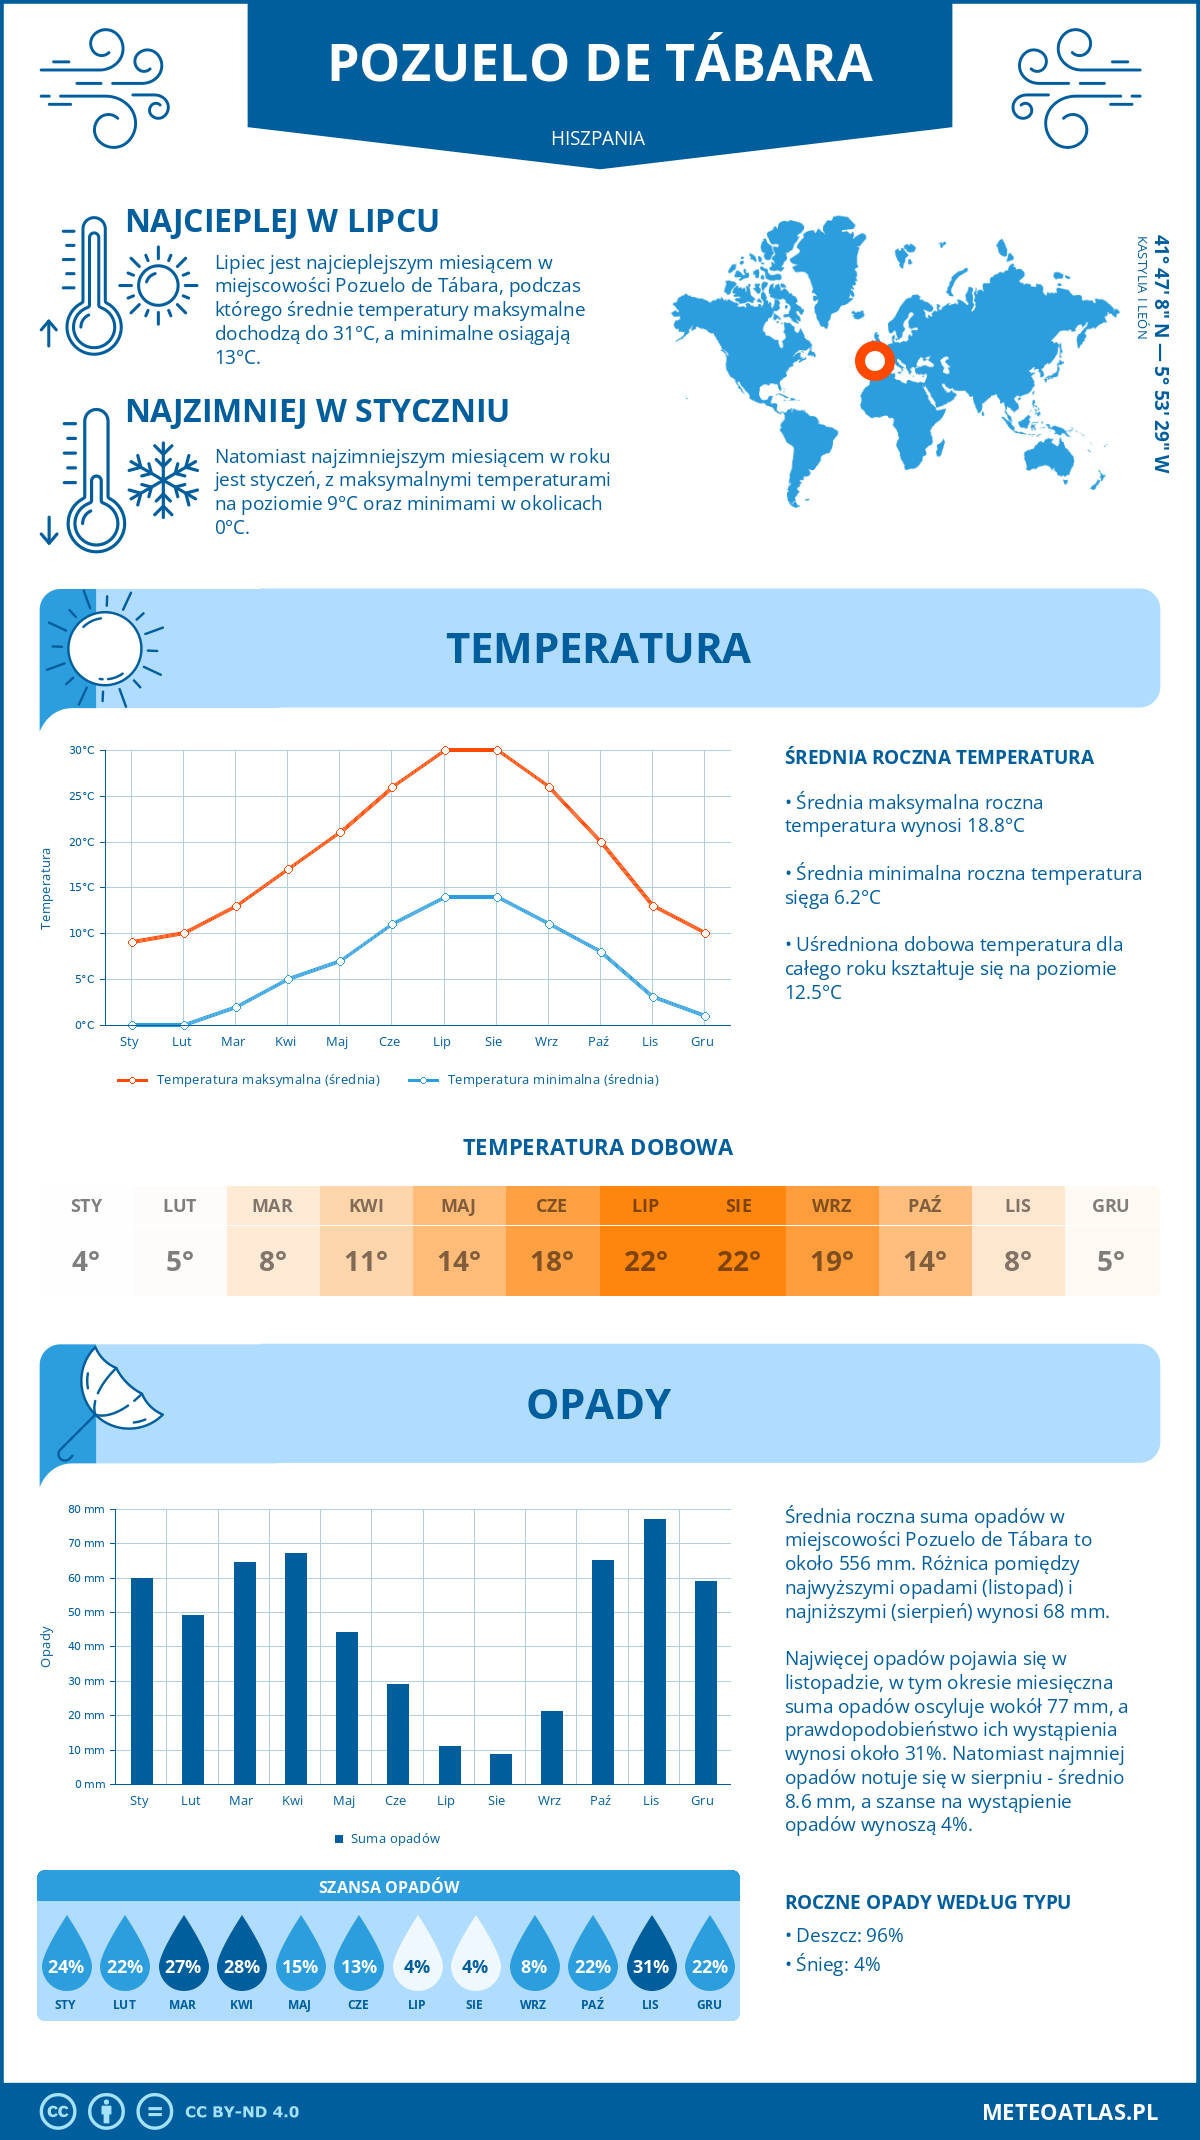 Pogoda Pozuelo de Tábara (Hiszpania). Temperatura oraz opady.